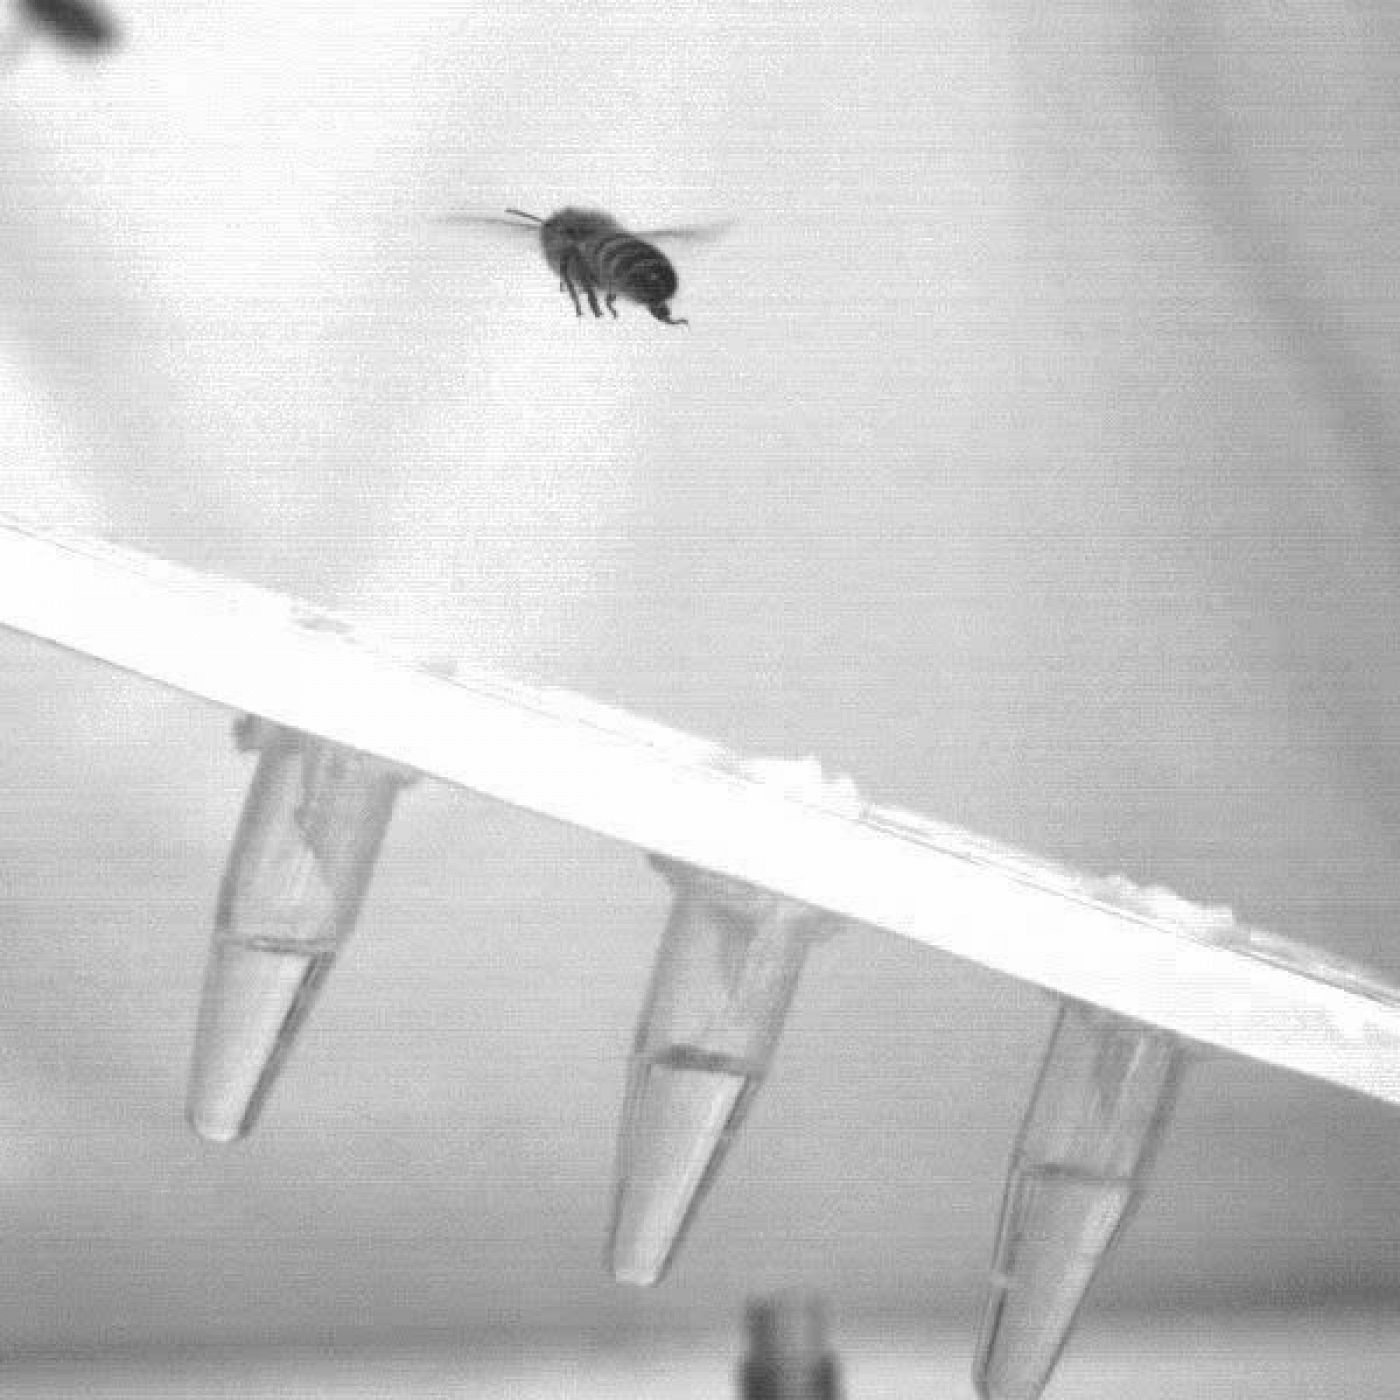  Imagen ralentizada de una abeja posándose